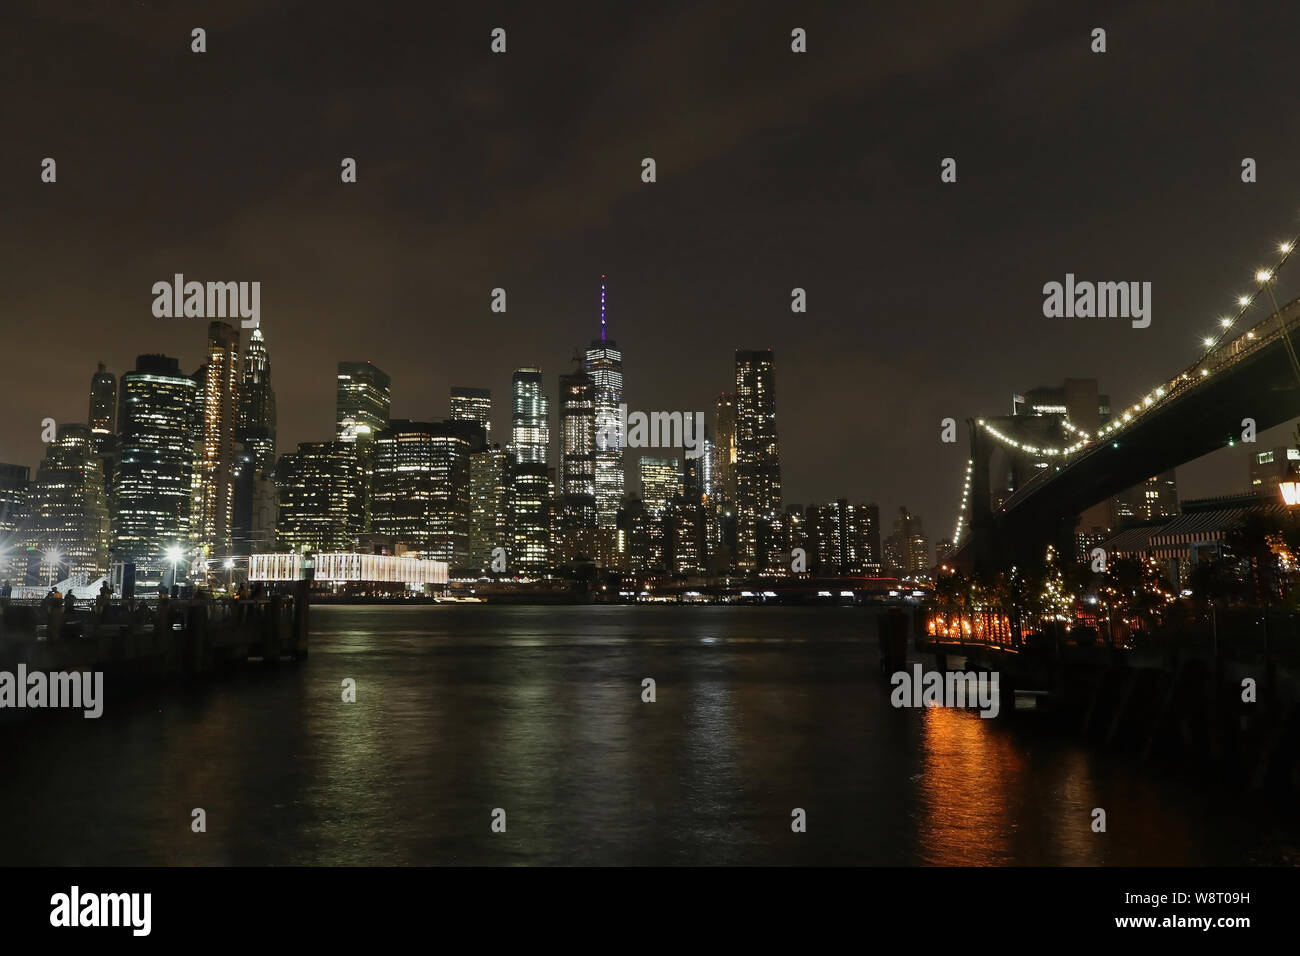 Wolkenkratzer Skyline von Lower Manhattan und Brooklyn Bridge Ecke mit Beleuchtung bei Nacht Stockfoto